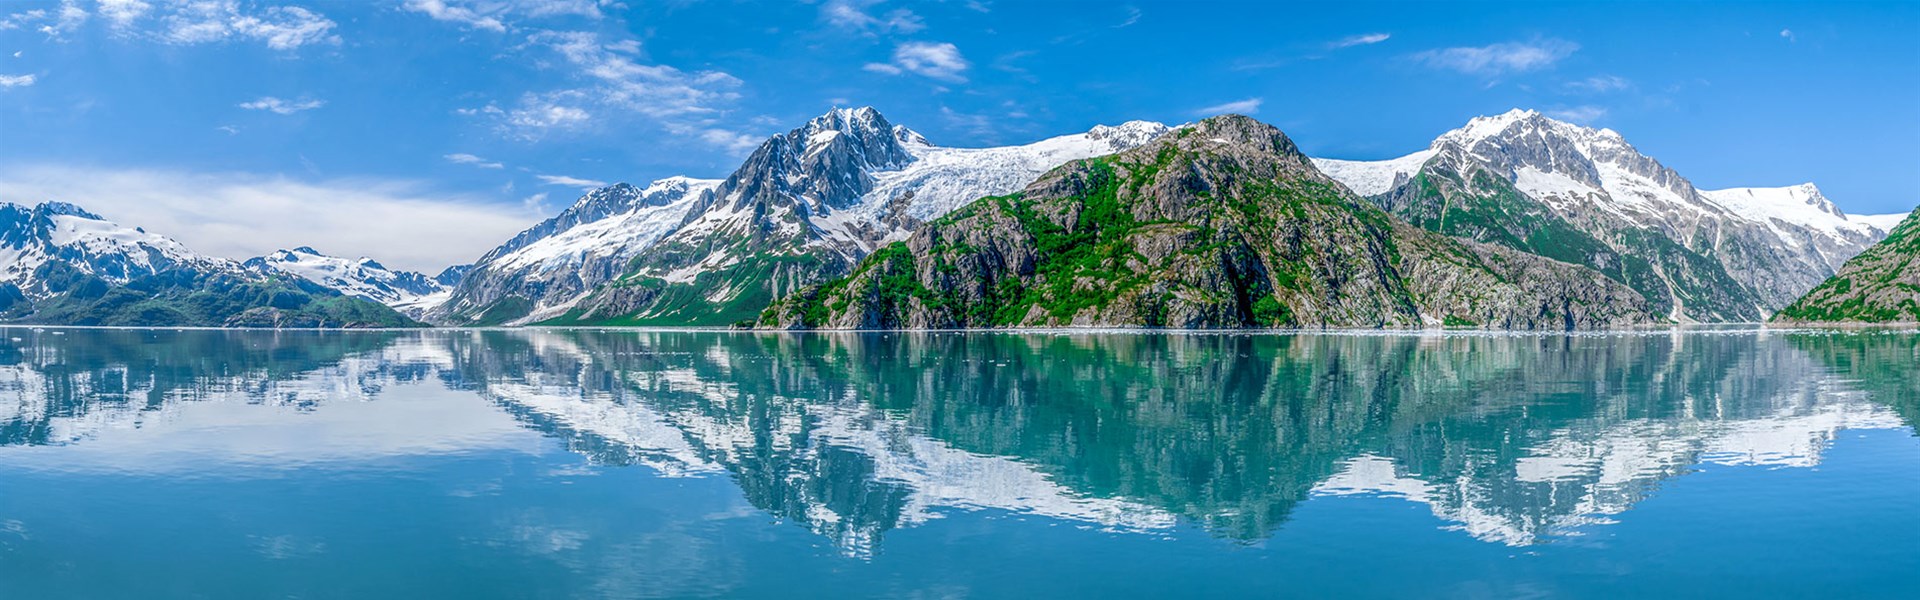 Aljaška - za divokou přírodou s českým průvodcem - 